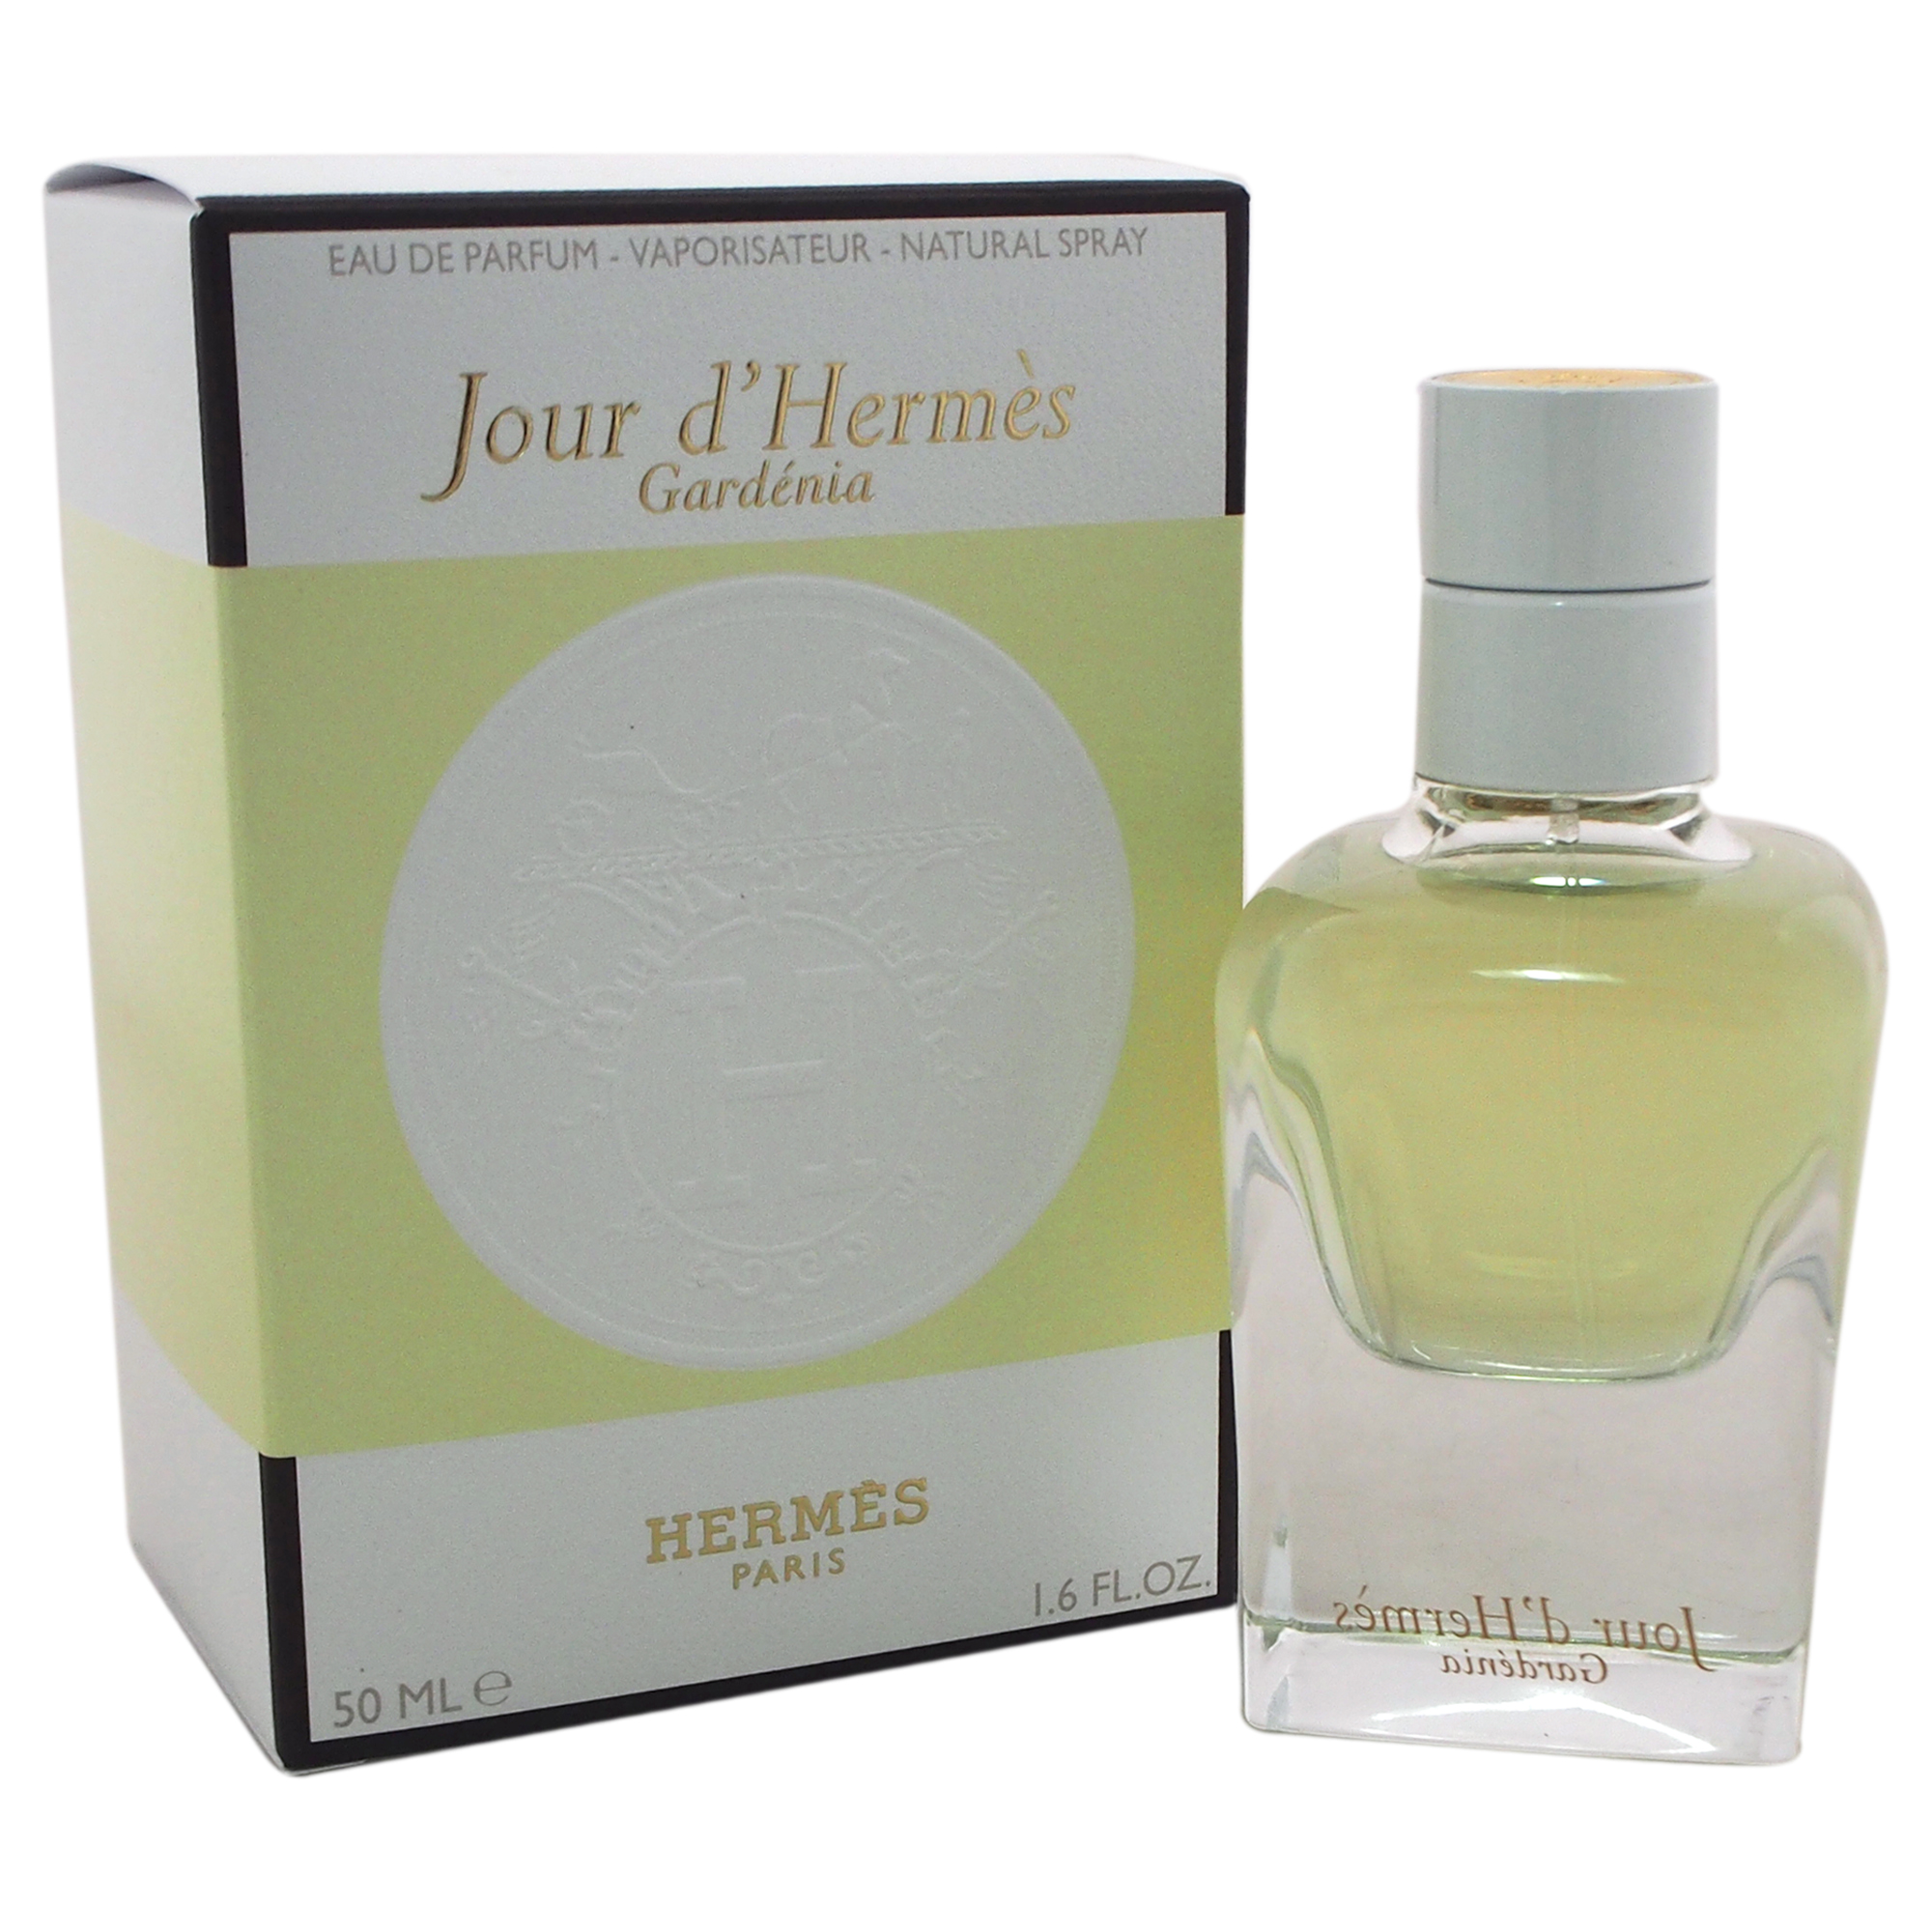 Hermes Jour d’Hermes Gardenia edp L